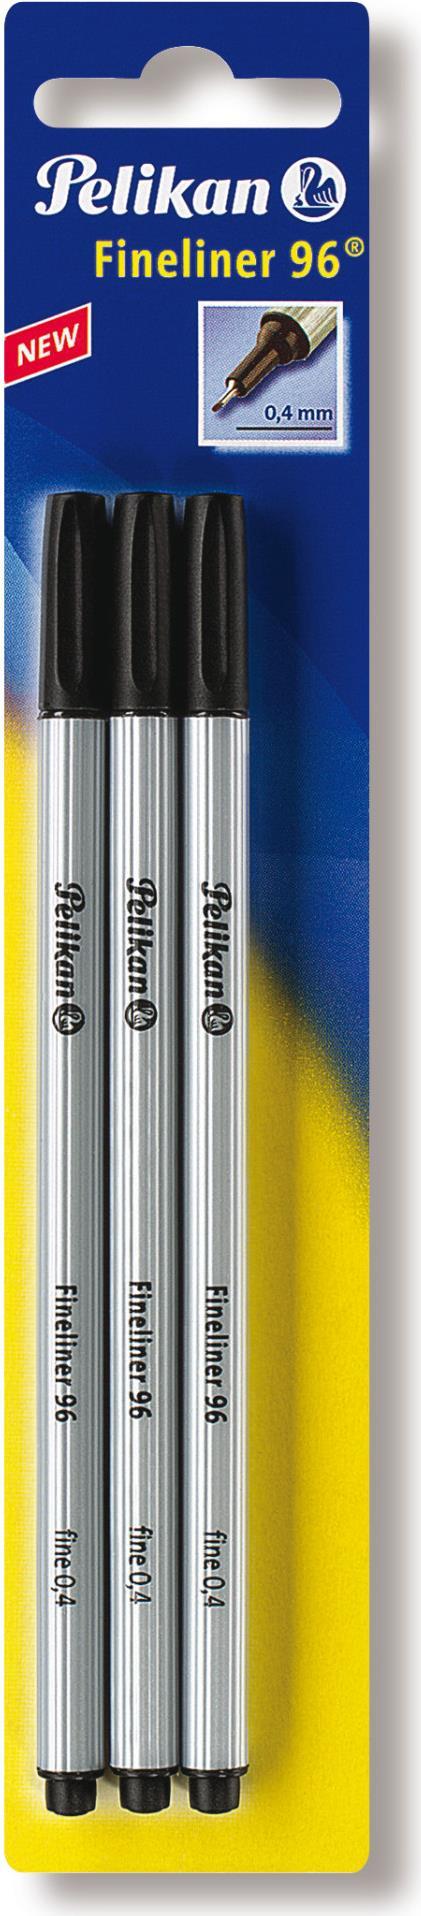 PELIKAN Fineliner 96 schwarz 3/B metallgefasste Spitze dokumentenechte lichtbestaendige Tinte Strichstaerke 4mm auf Blisterkarte (00940601)